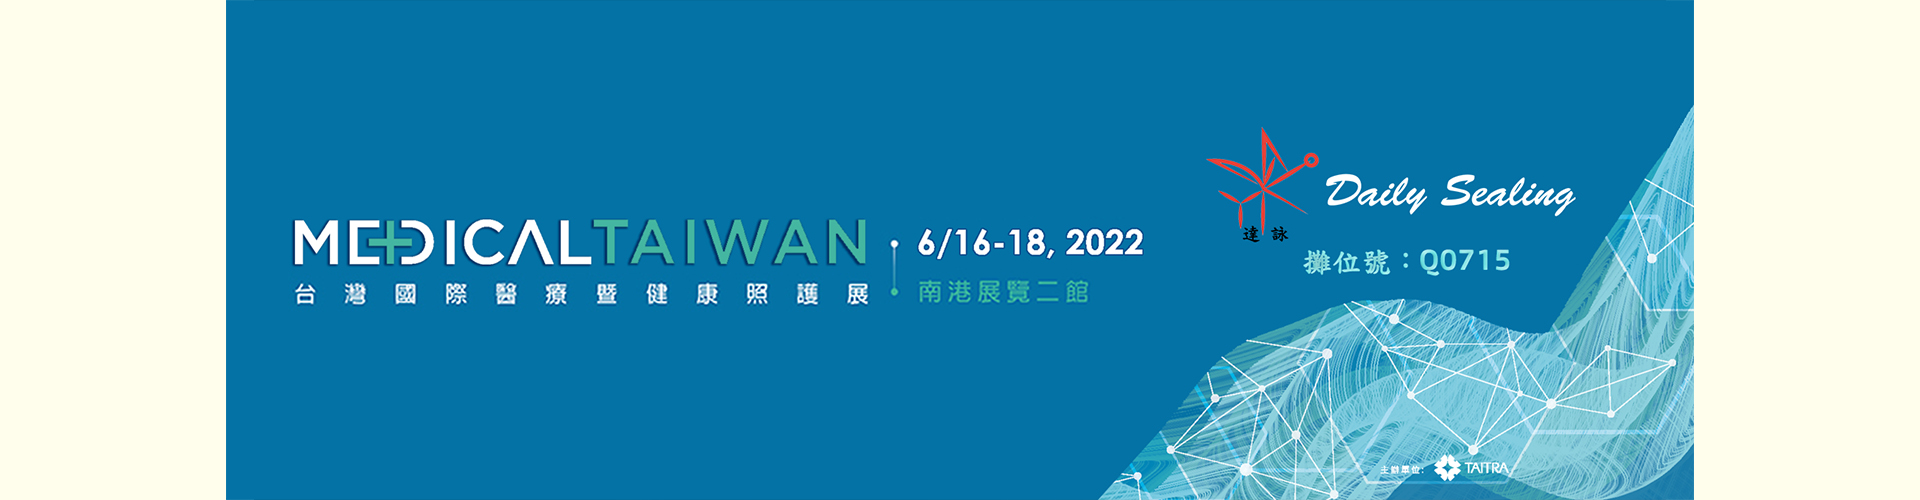 2022 台灣國際醫療暨健康照護展